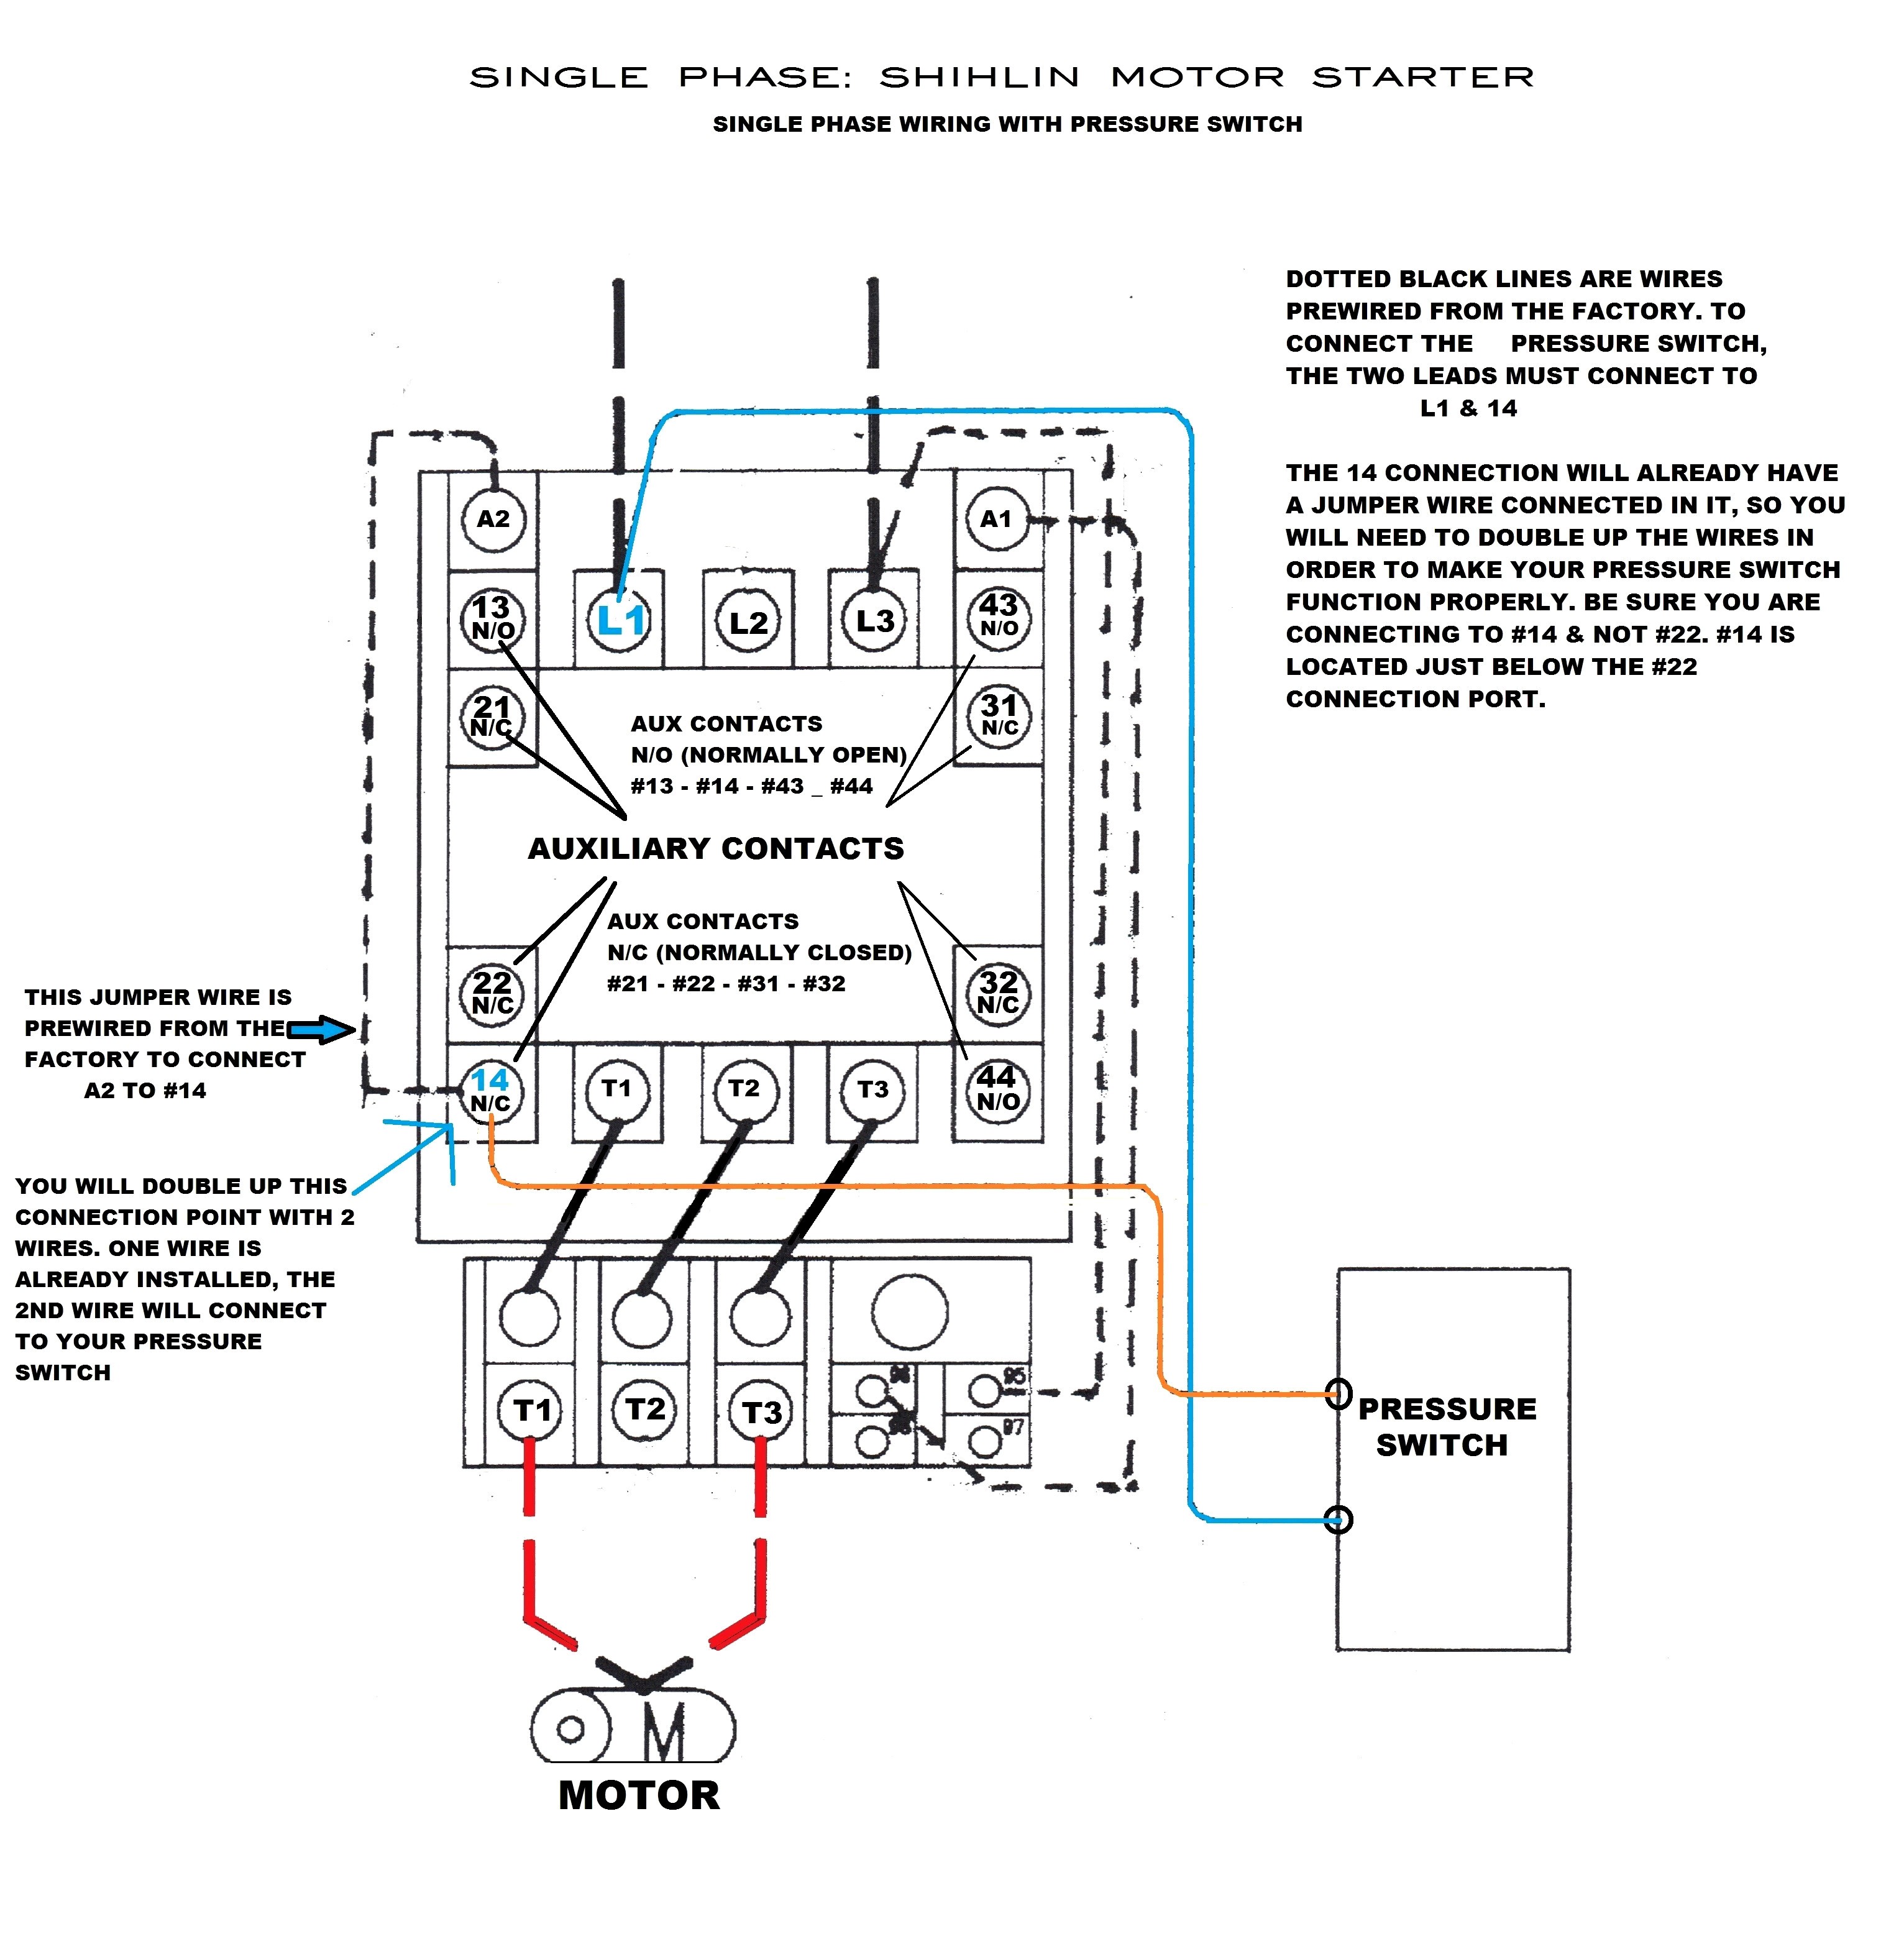 bination motor starter wiring diagram wiring diagram starter solenoid best starter solenoid wiring diagram of bination motor starter wiring diagram